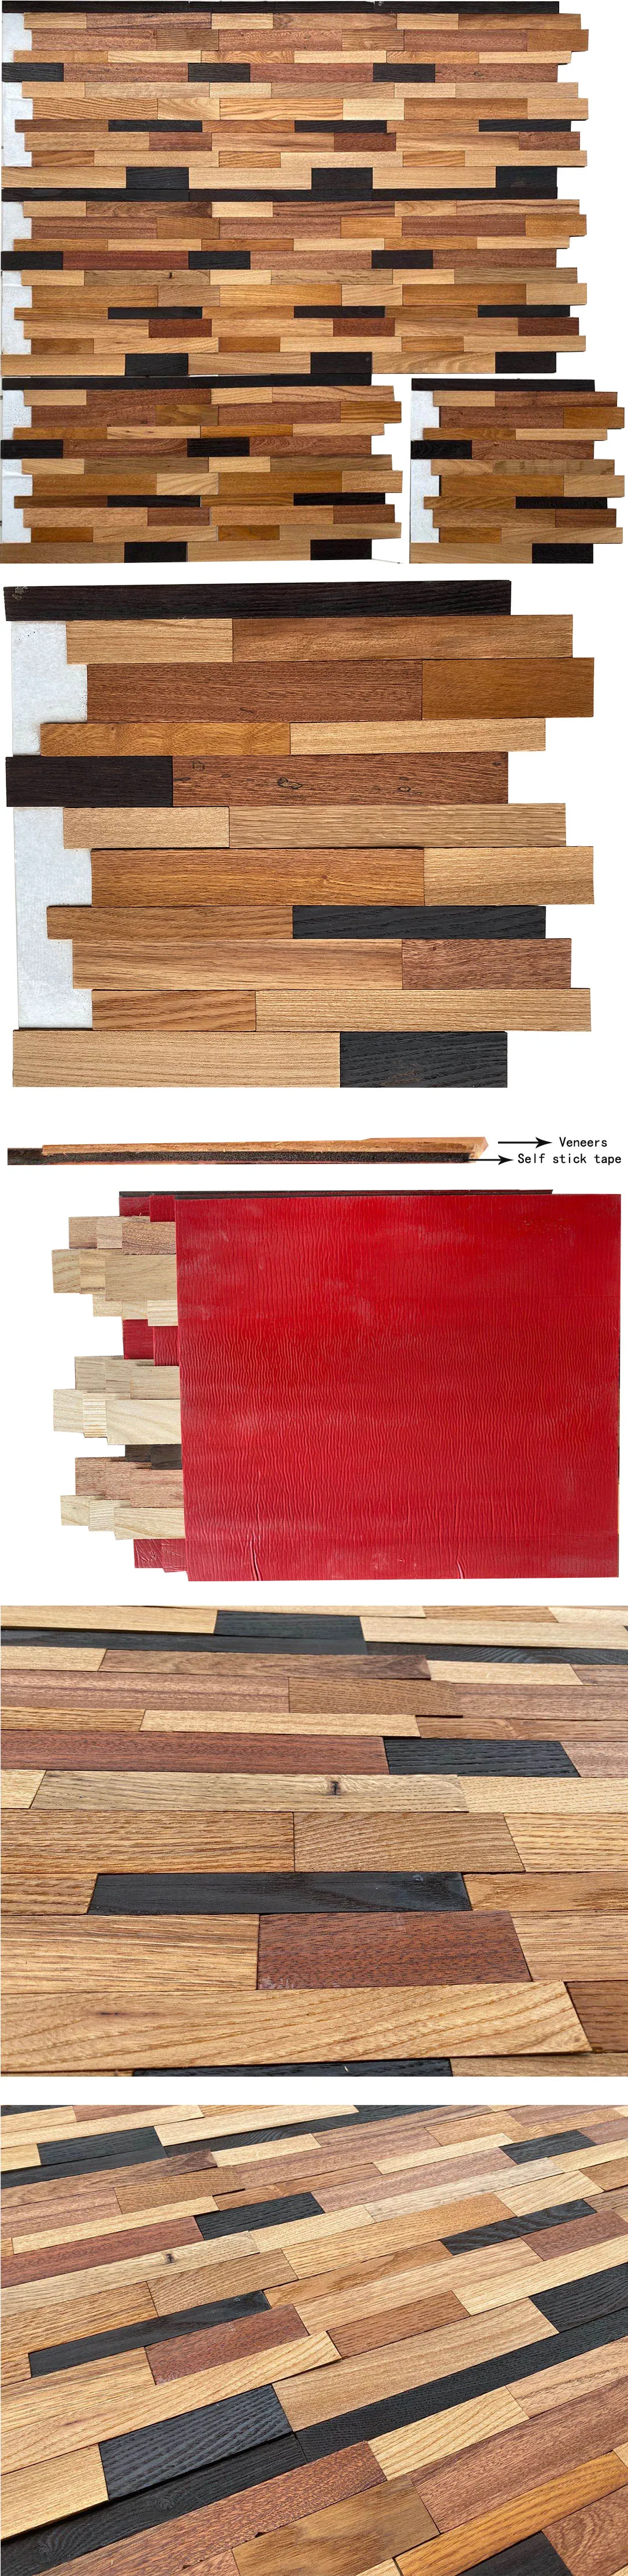 wood veneers 1.jpg